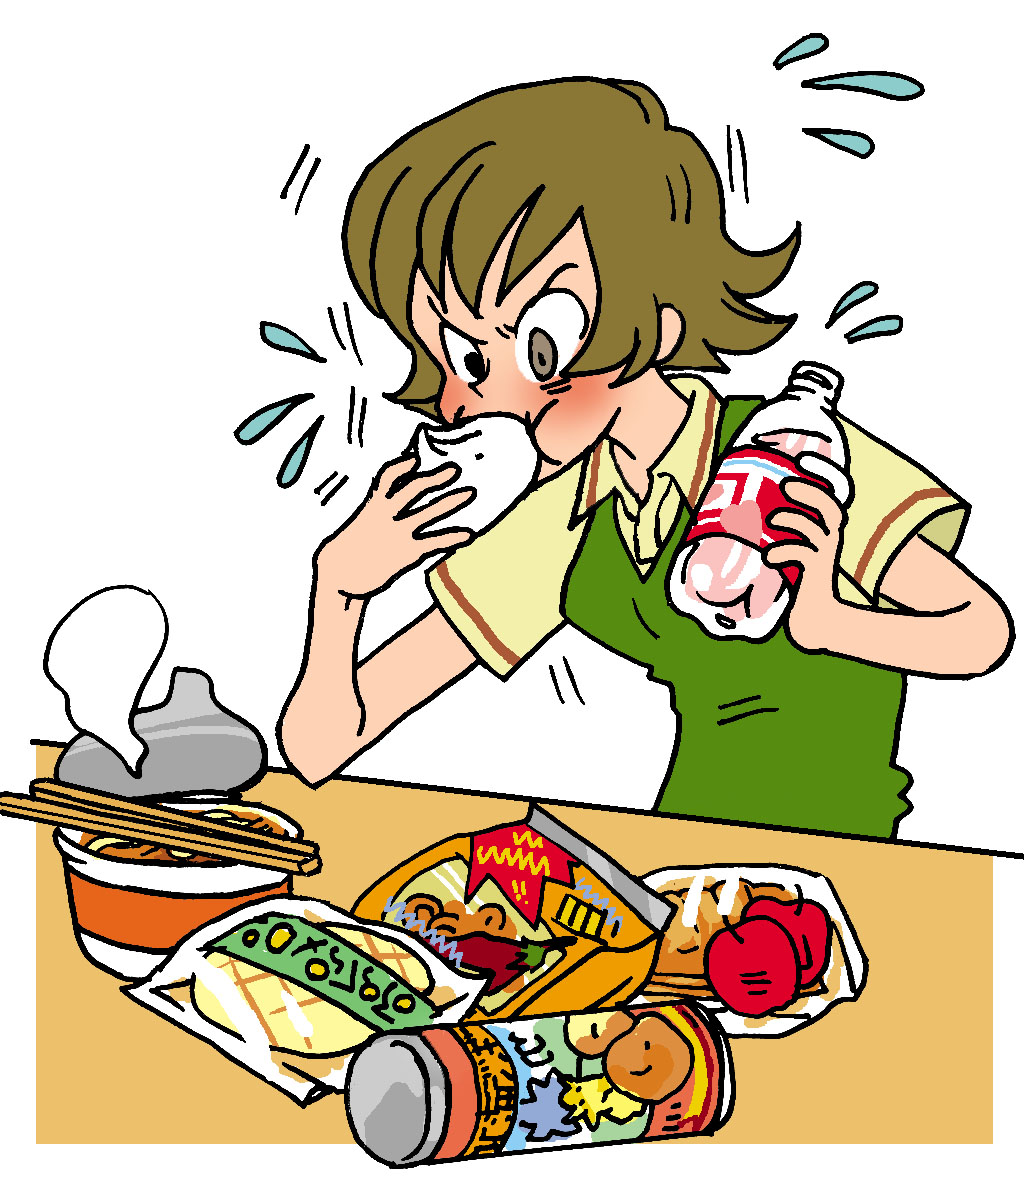 健康のために 間食について考えよう 13 10 札幌北辰病院 地域医療機能推進機構